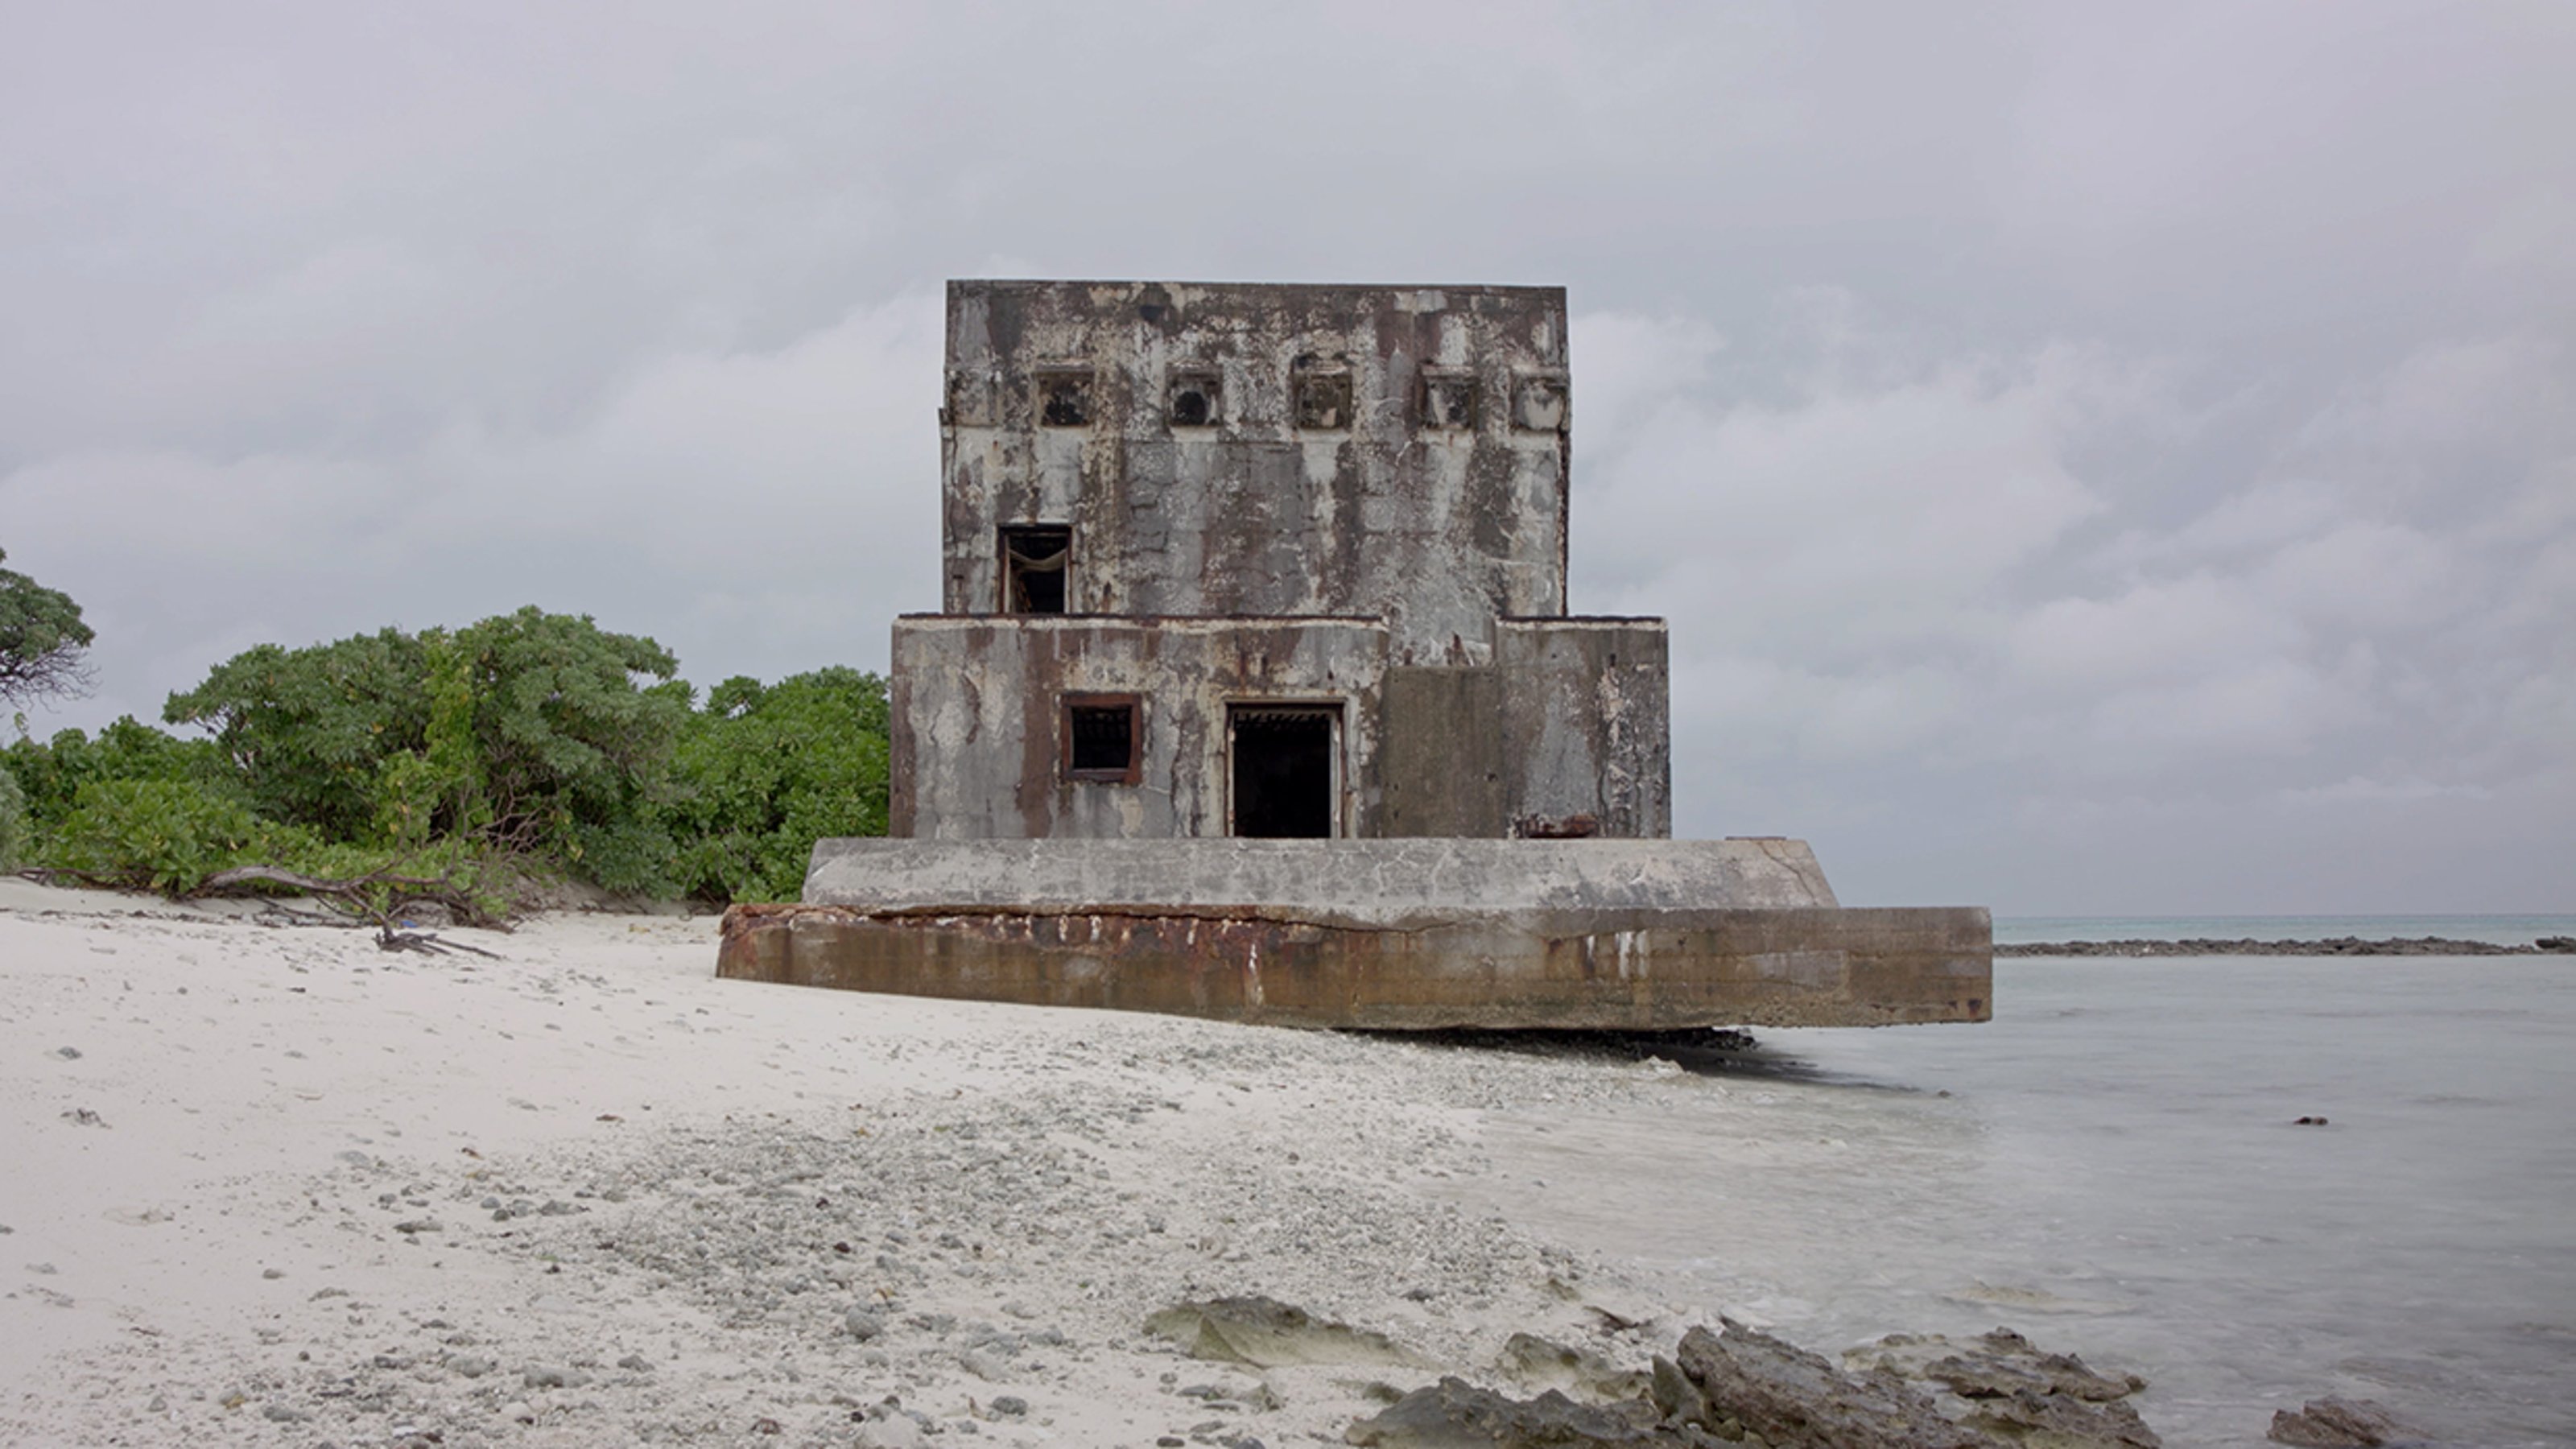 Plano general de un edificio abandonado en la playa